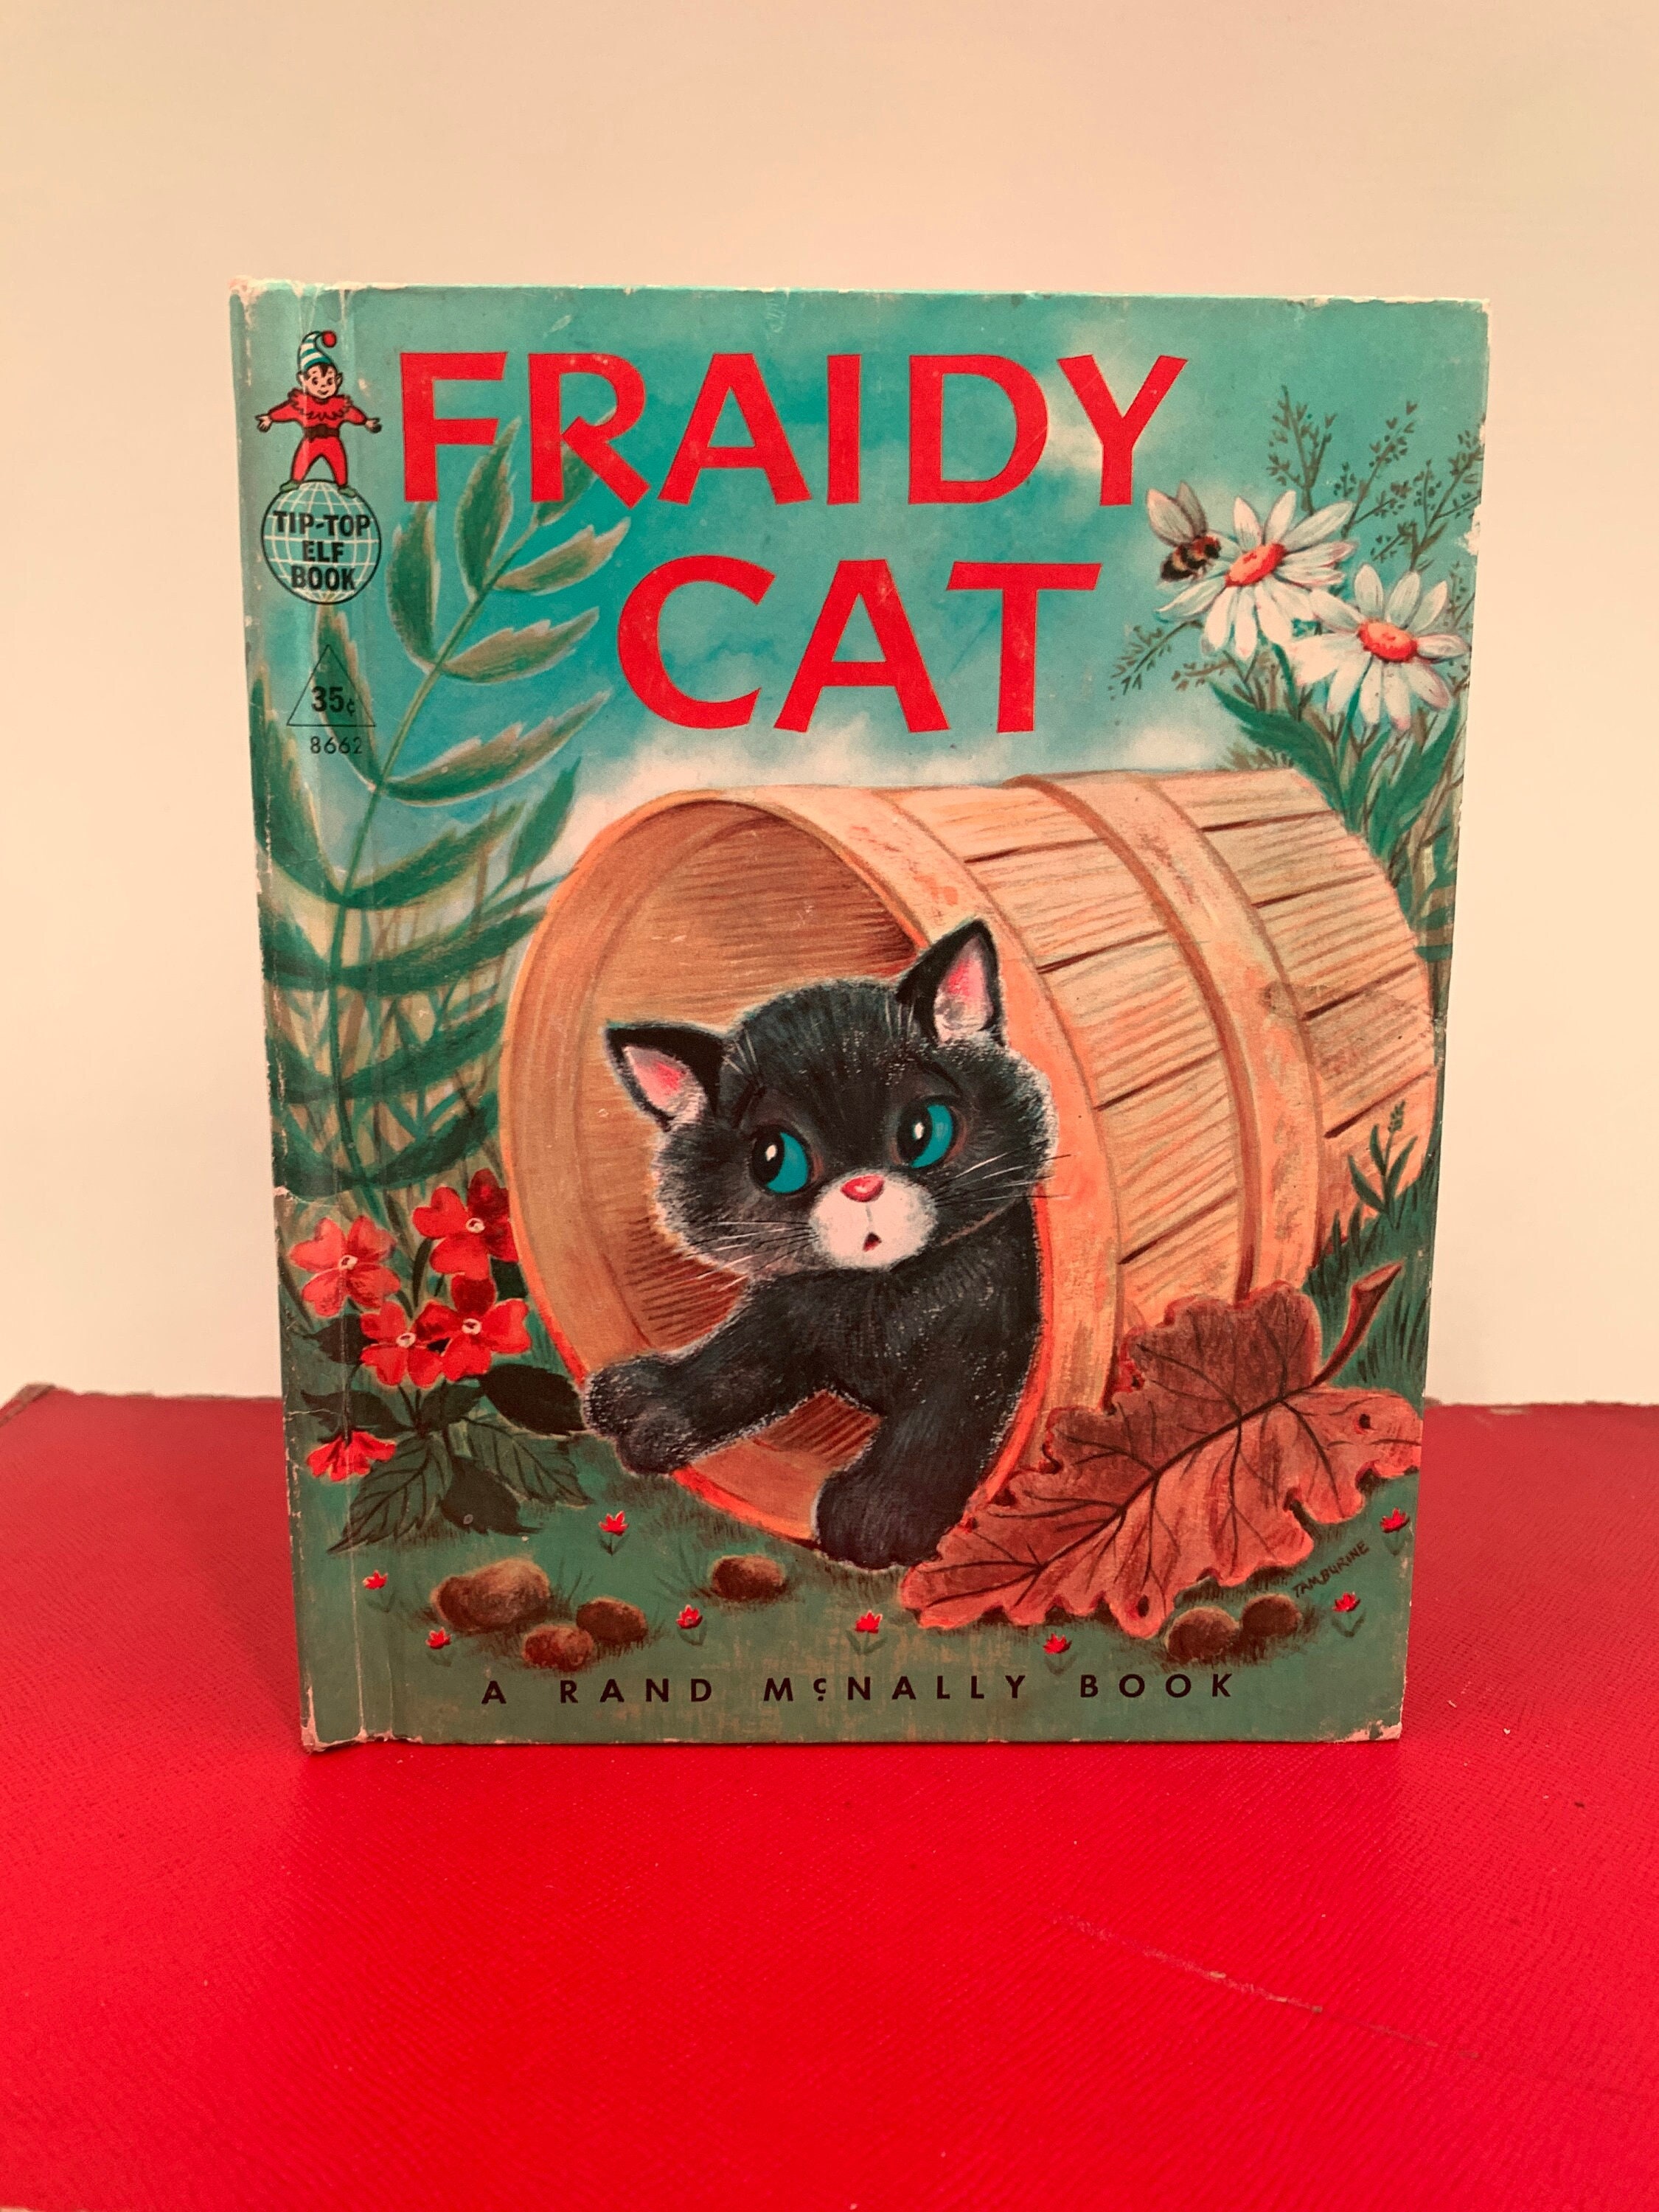 FRAIDY CAT - Tip Top Elf Book- 1959 - Marjorie Barrows - Jean Tamburine